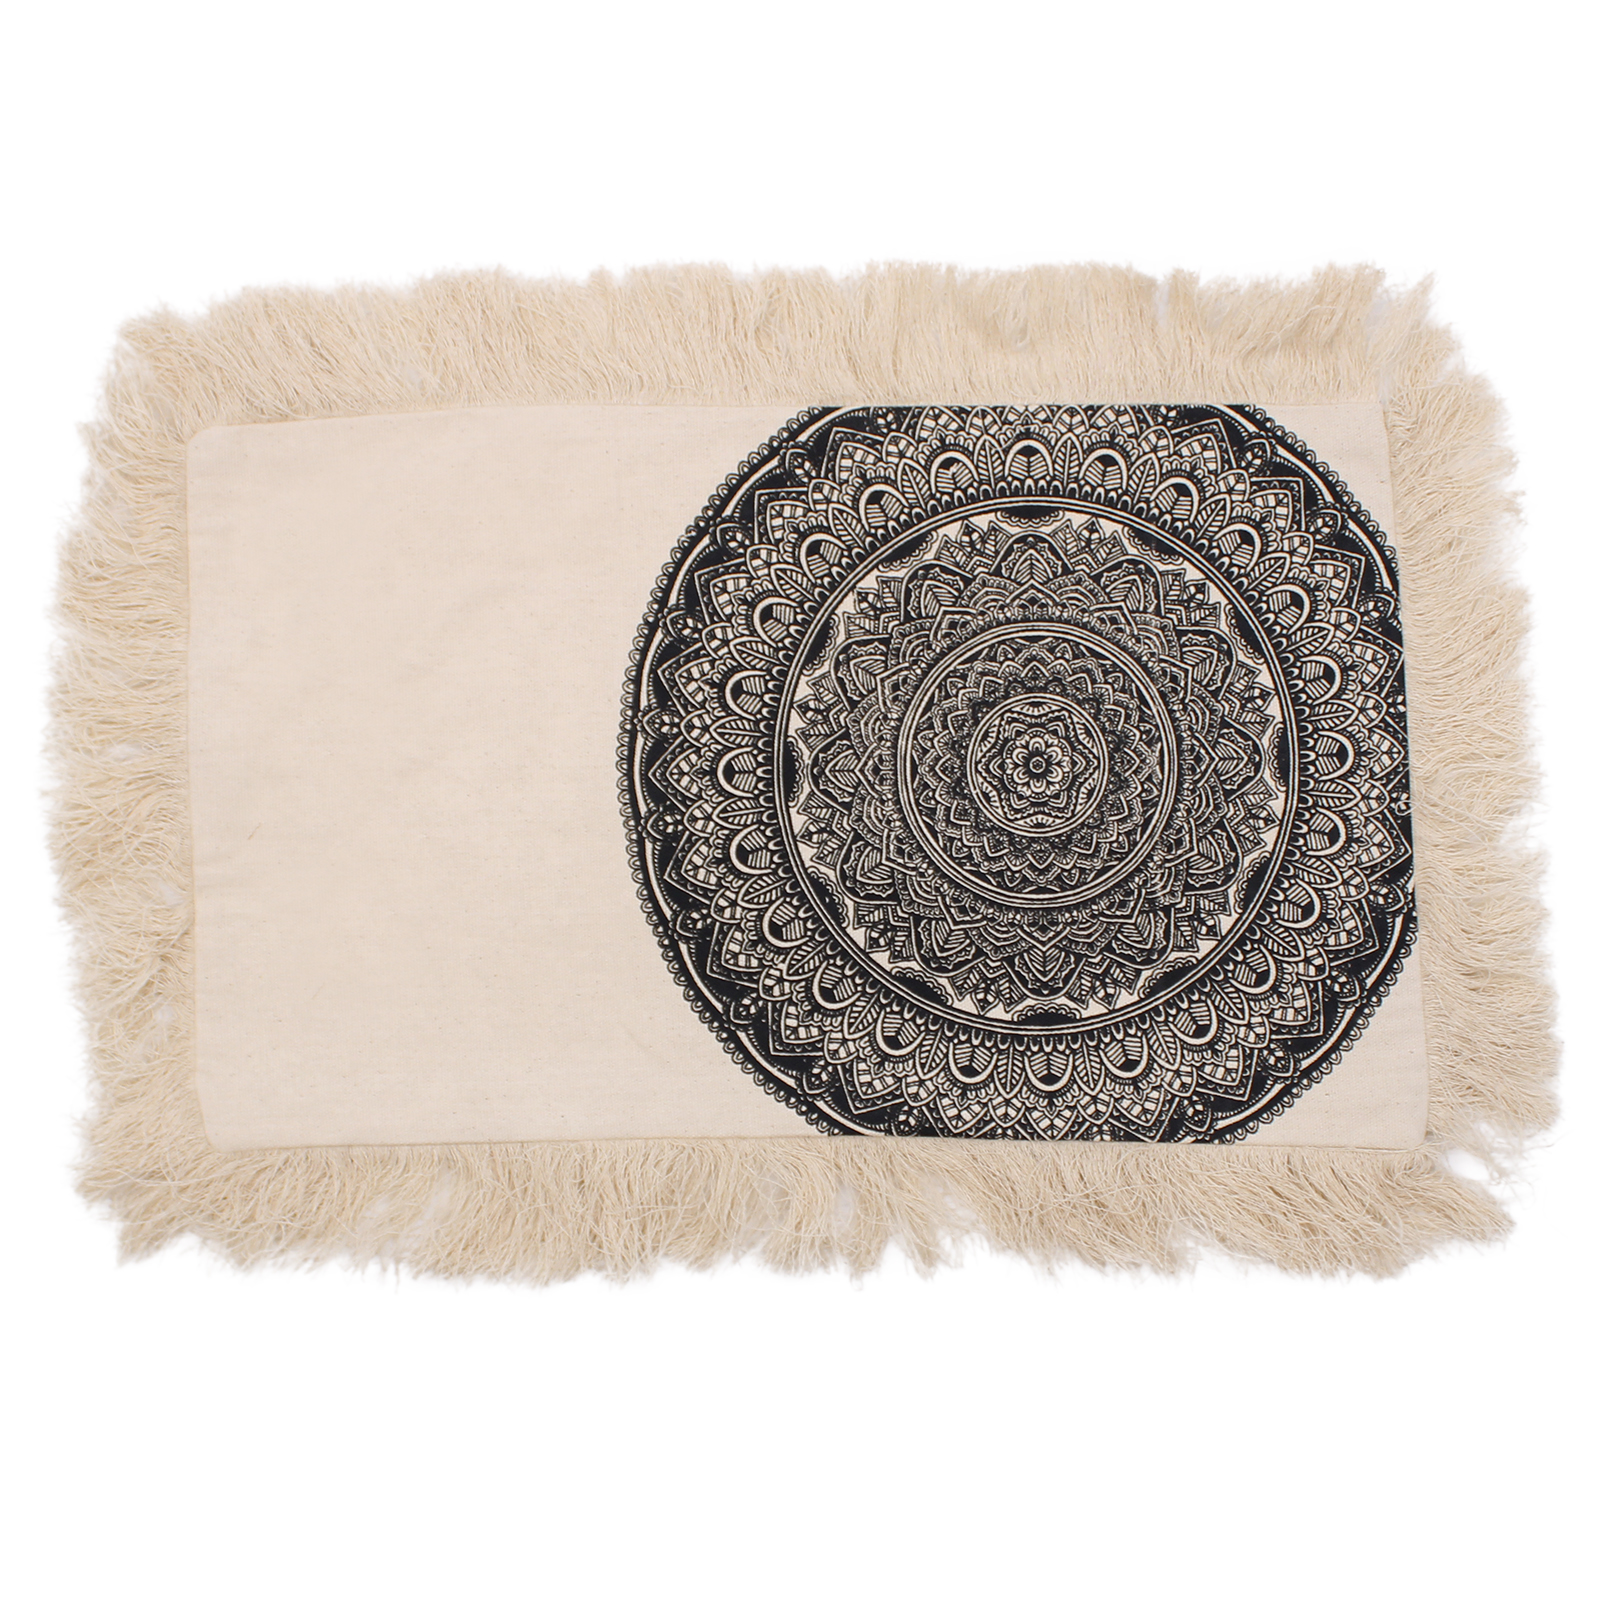 Traditional Mandala Cushion Cover - 30x50cm - black